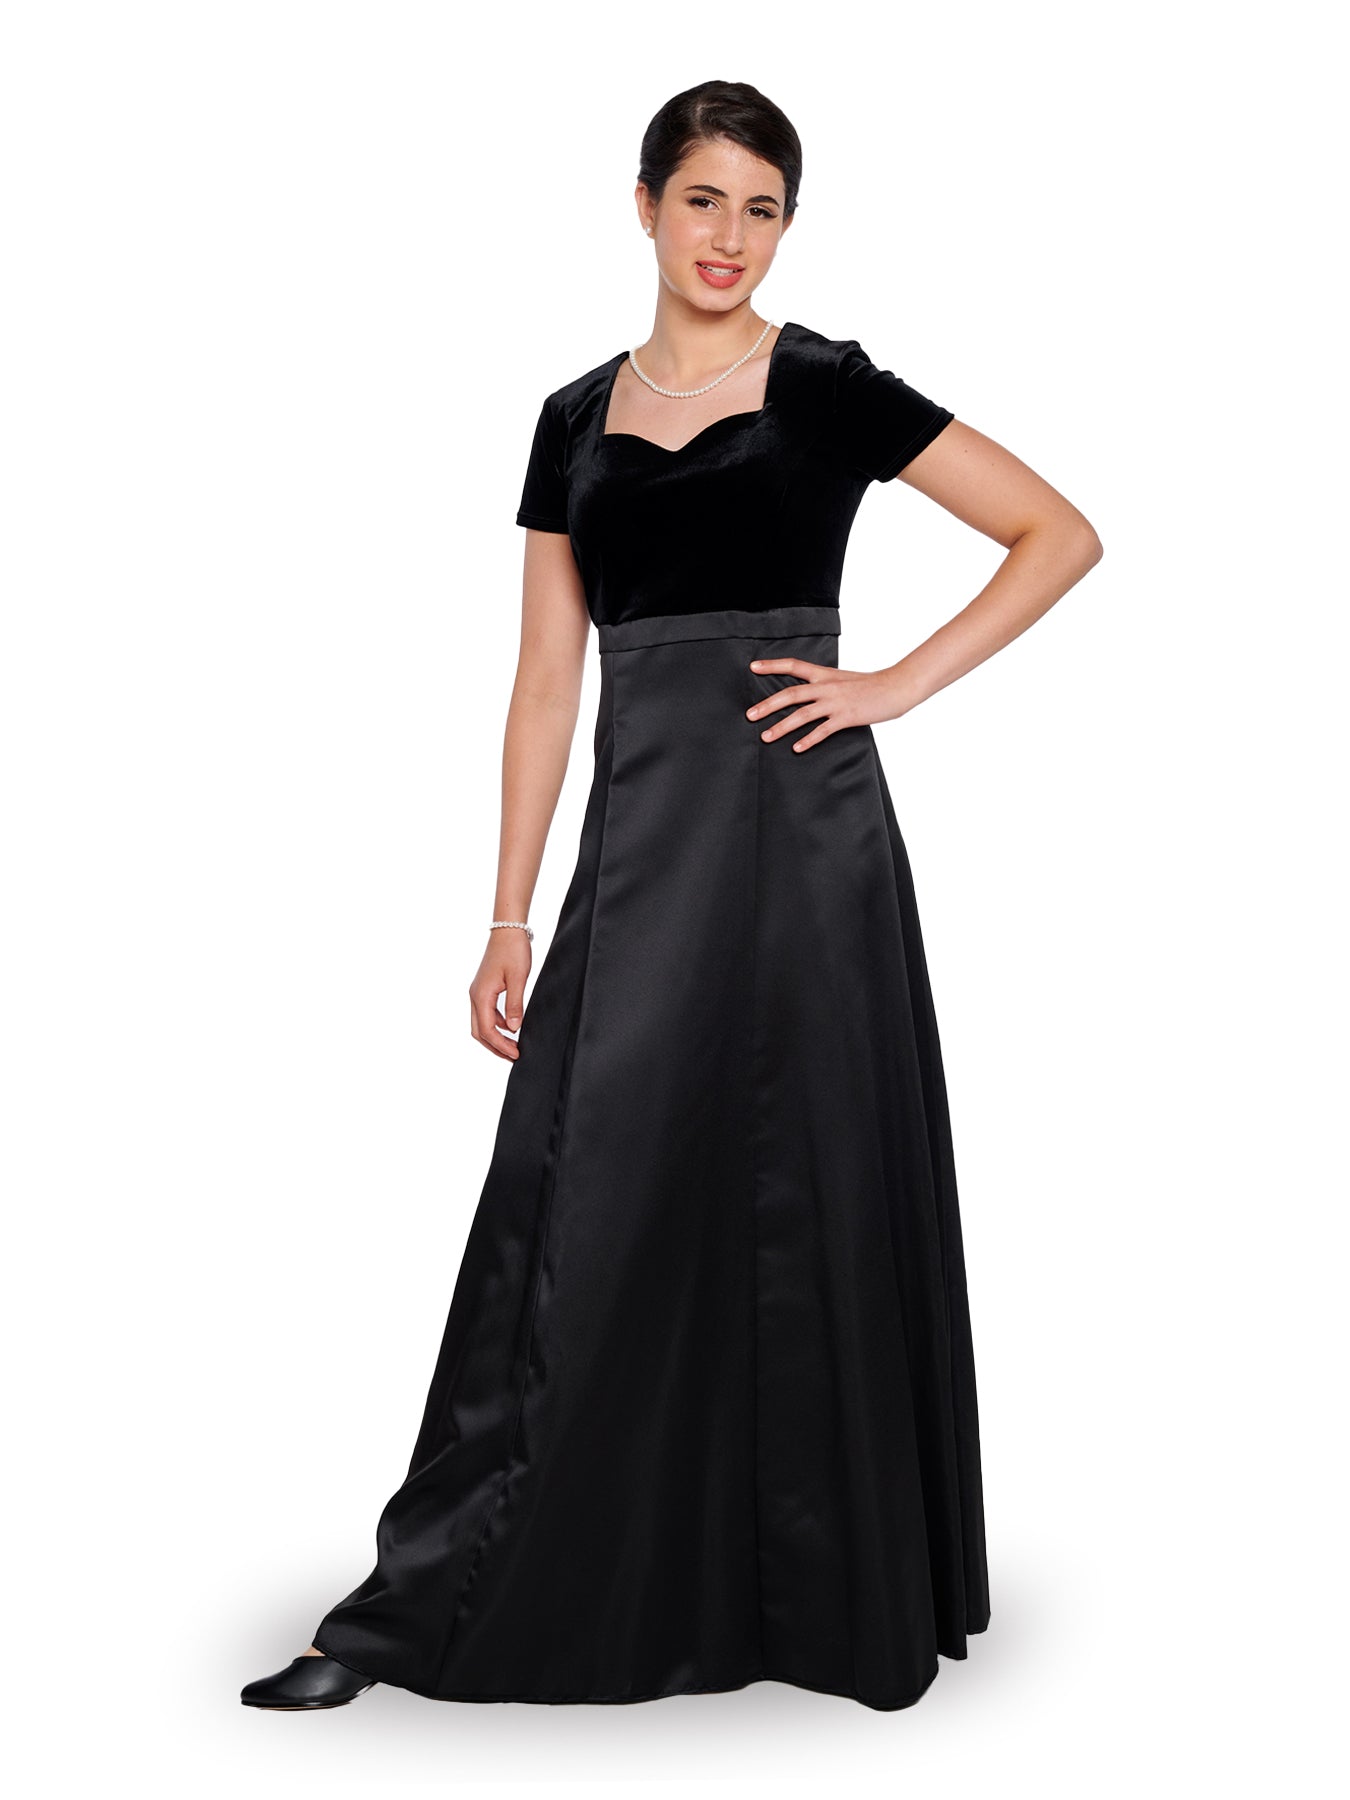 STEPHANIE (Style #2503) - Velvet Sweetheart Neck, Short Sleeve Dress